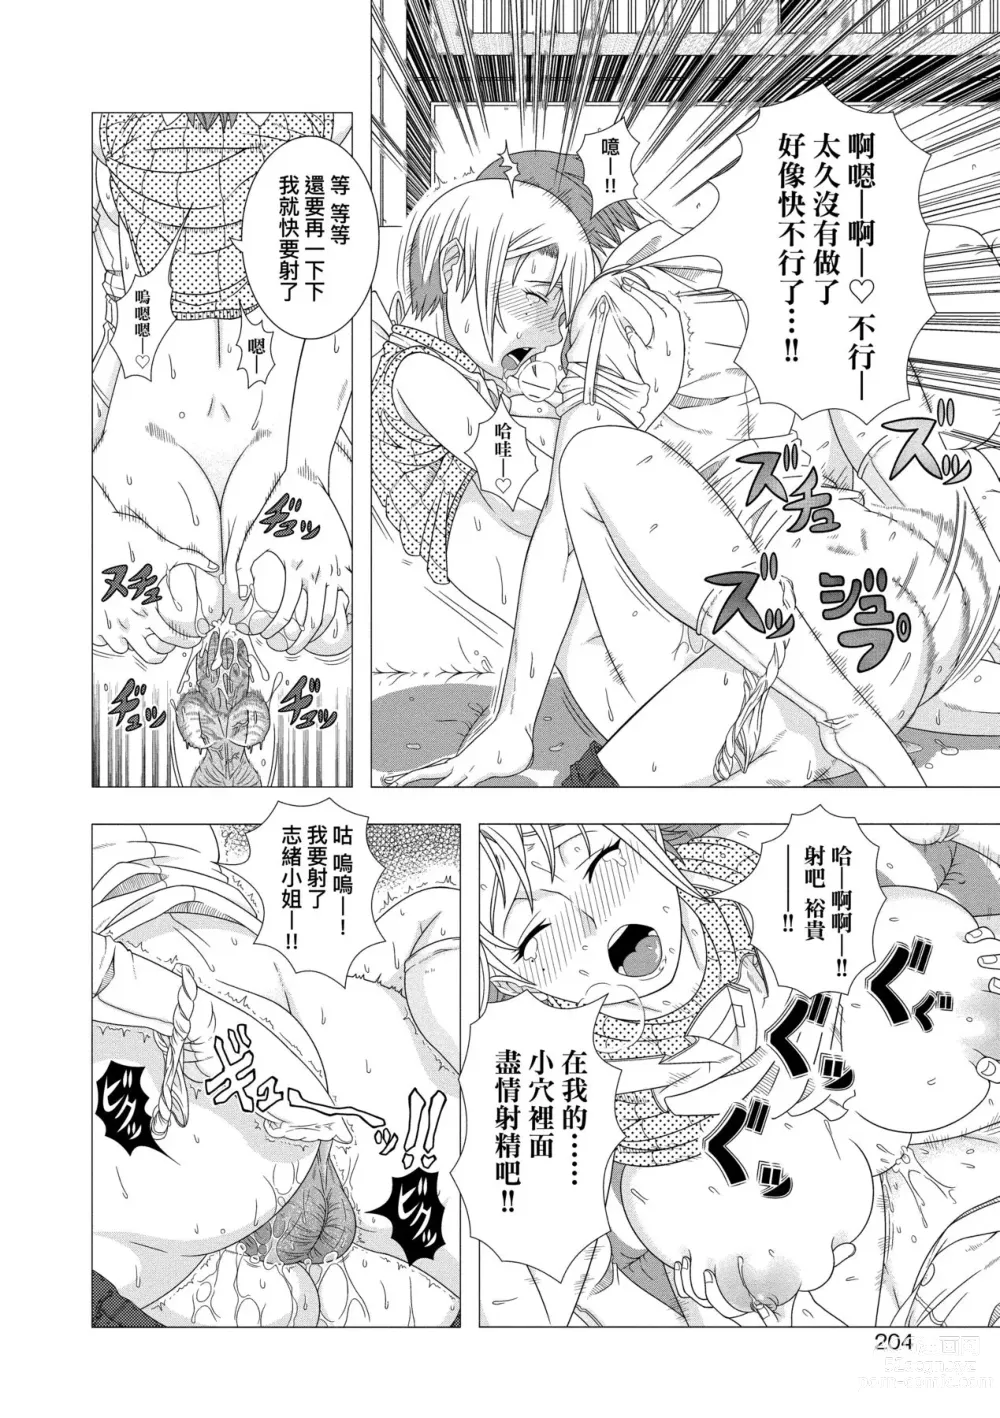 Page 206 of manga Hitozuma Life (decensored)